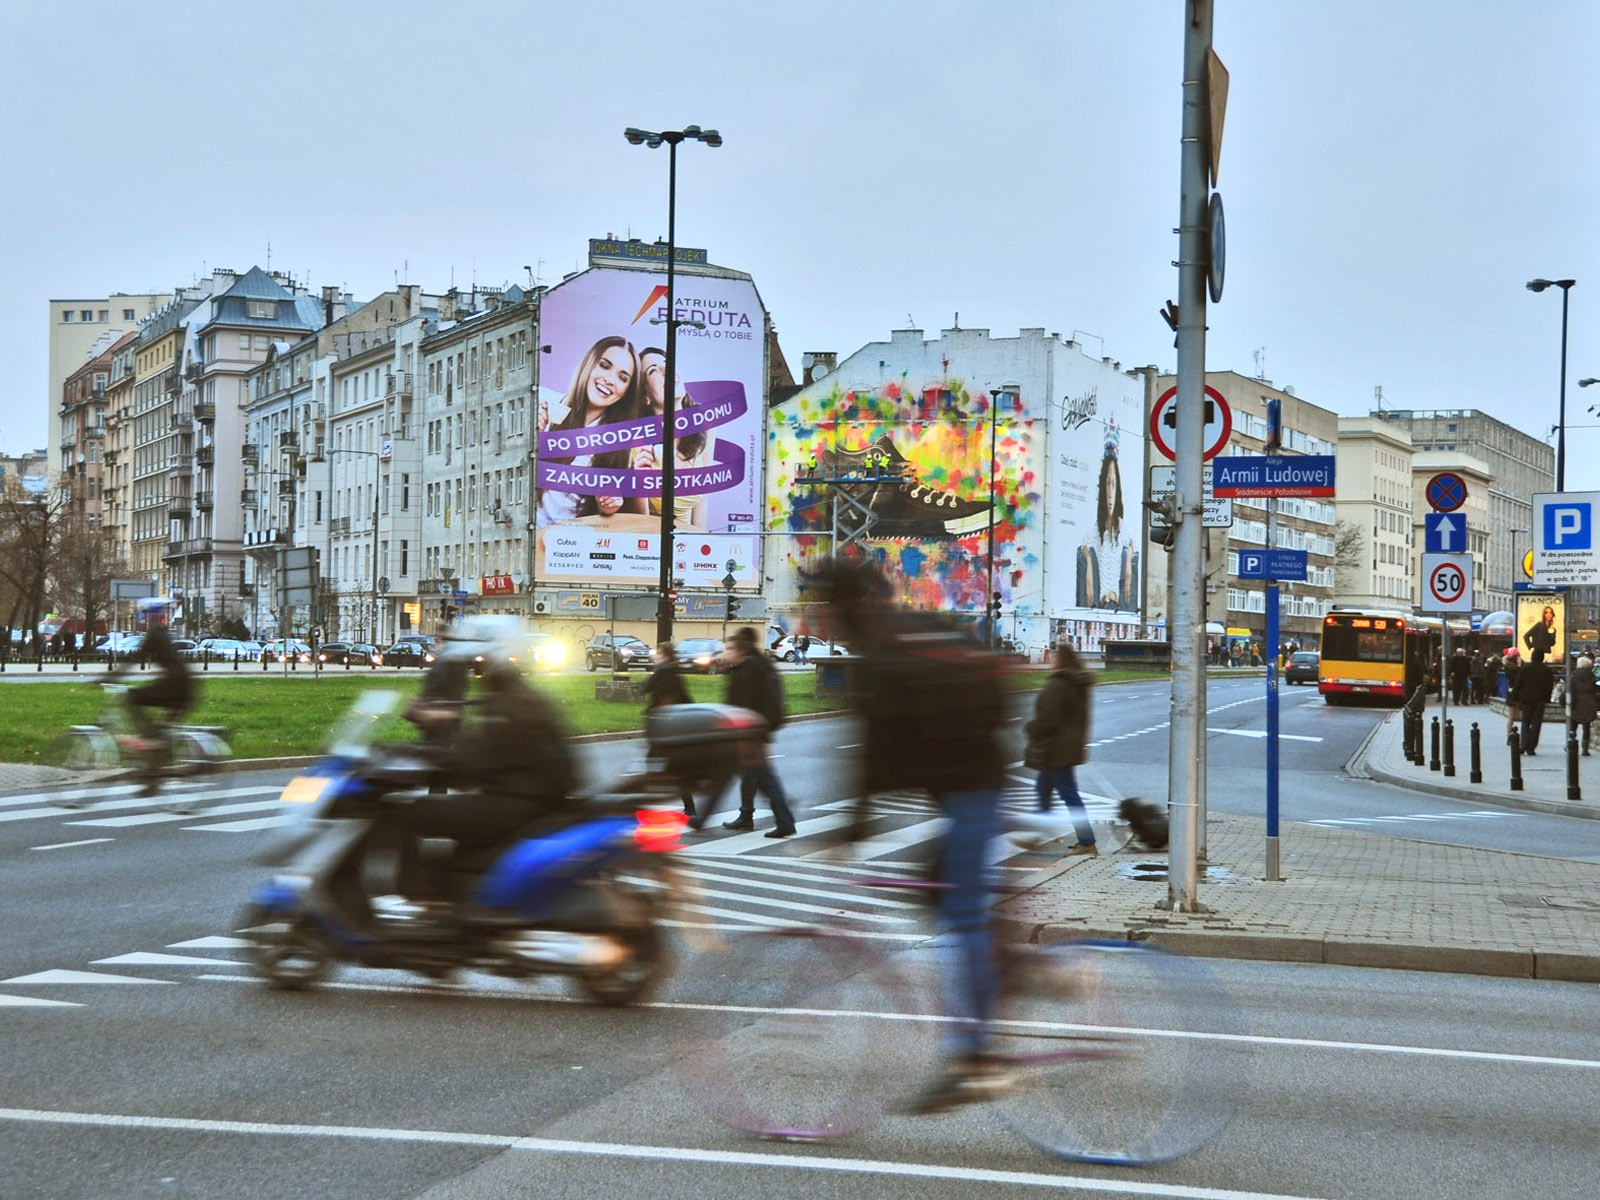 Mural reklamowy Converse getwinterized - Warszawa Metro Politechnika | malowanie nietypowych reklam | Portfolio